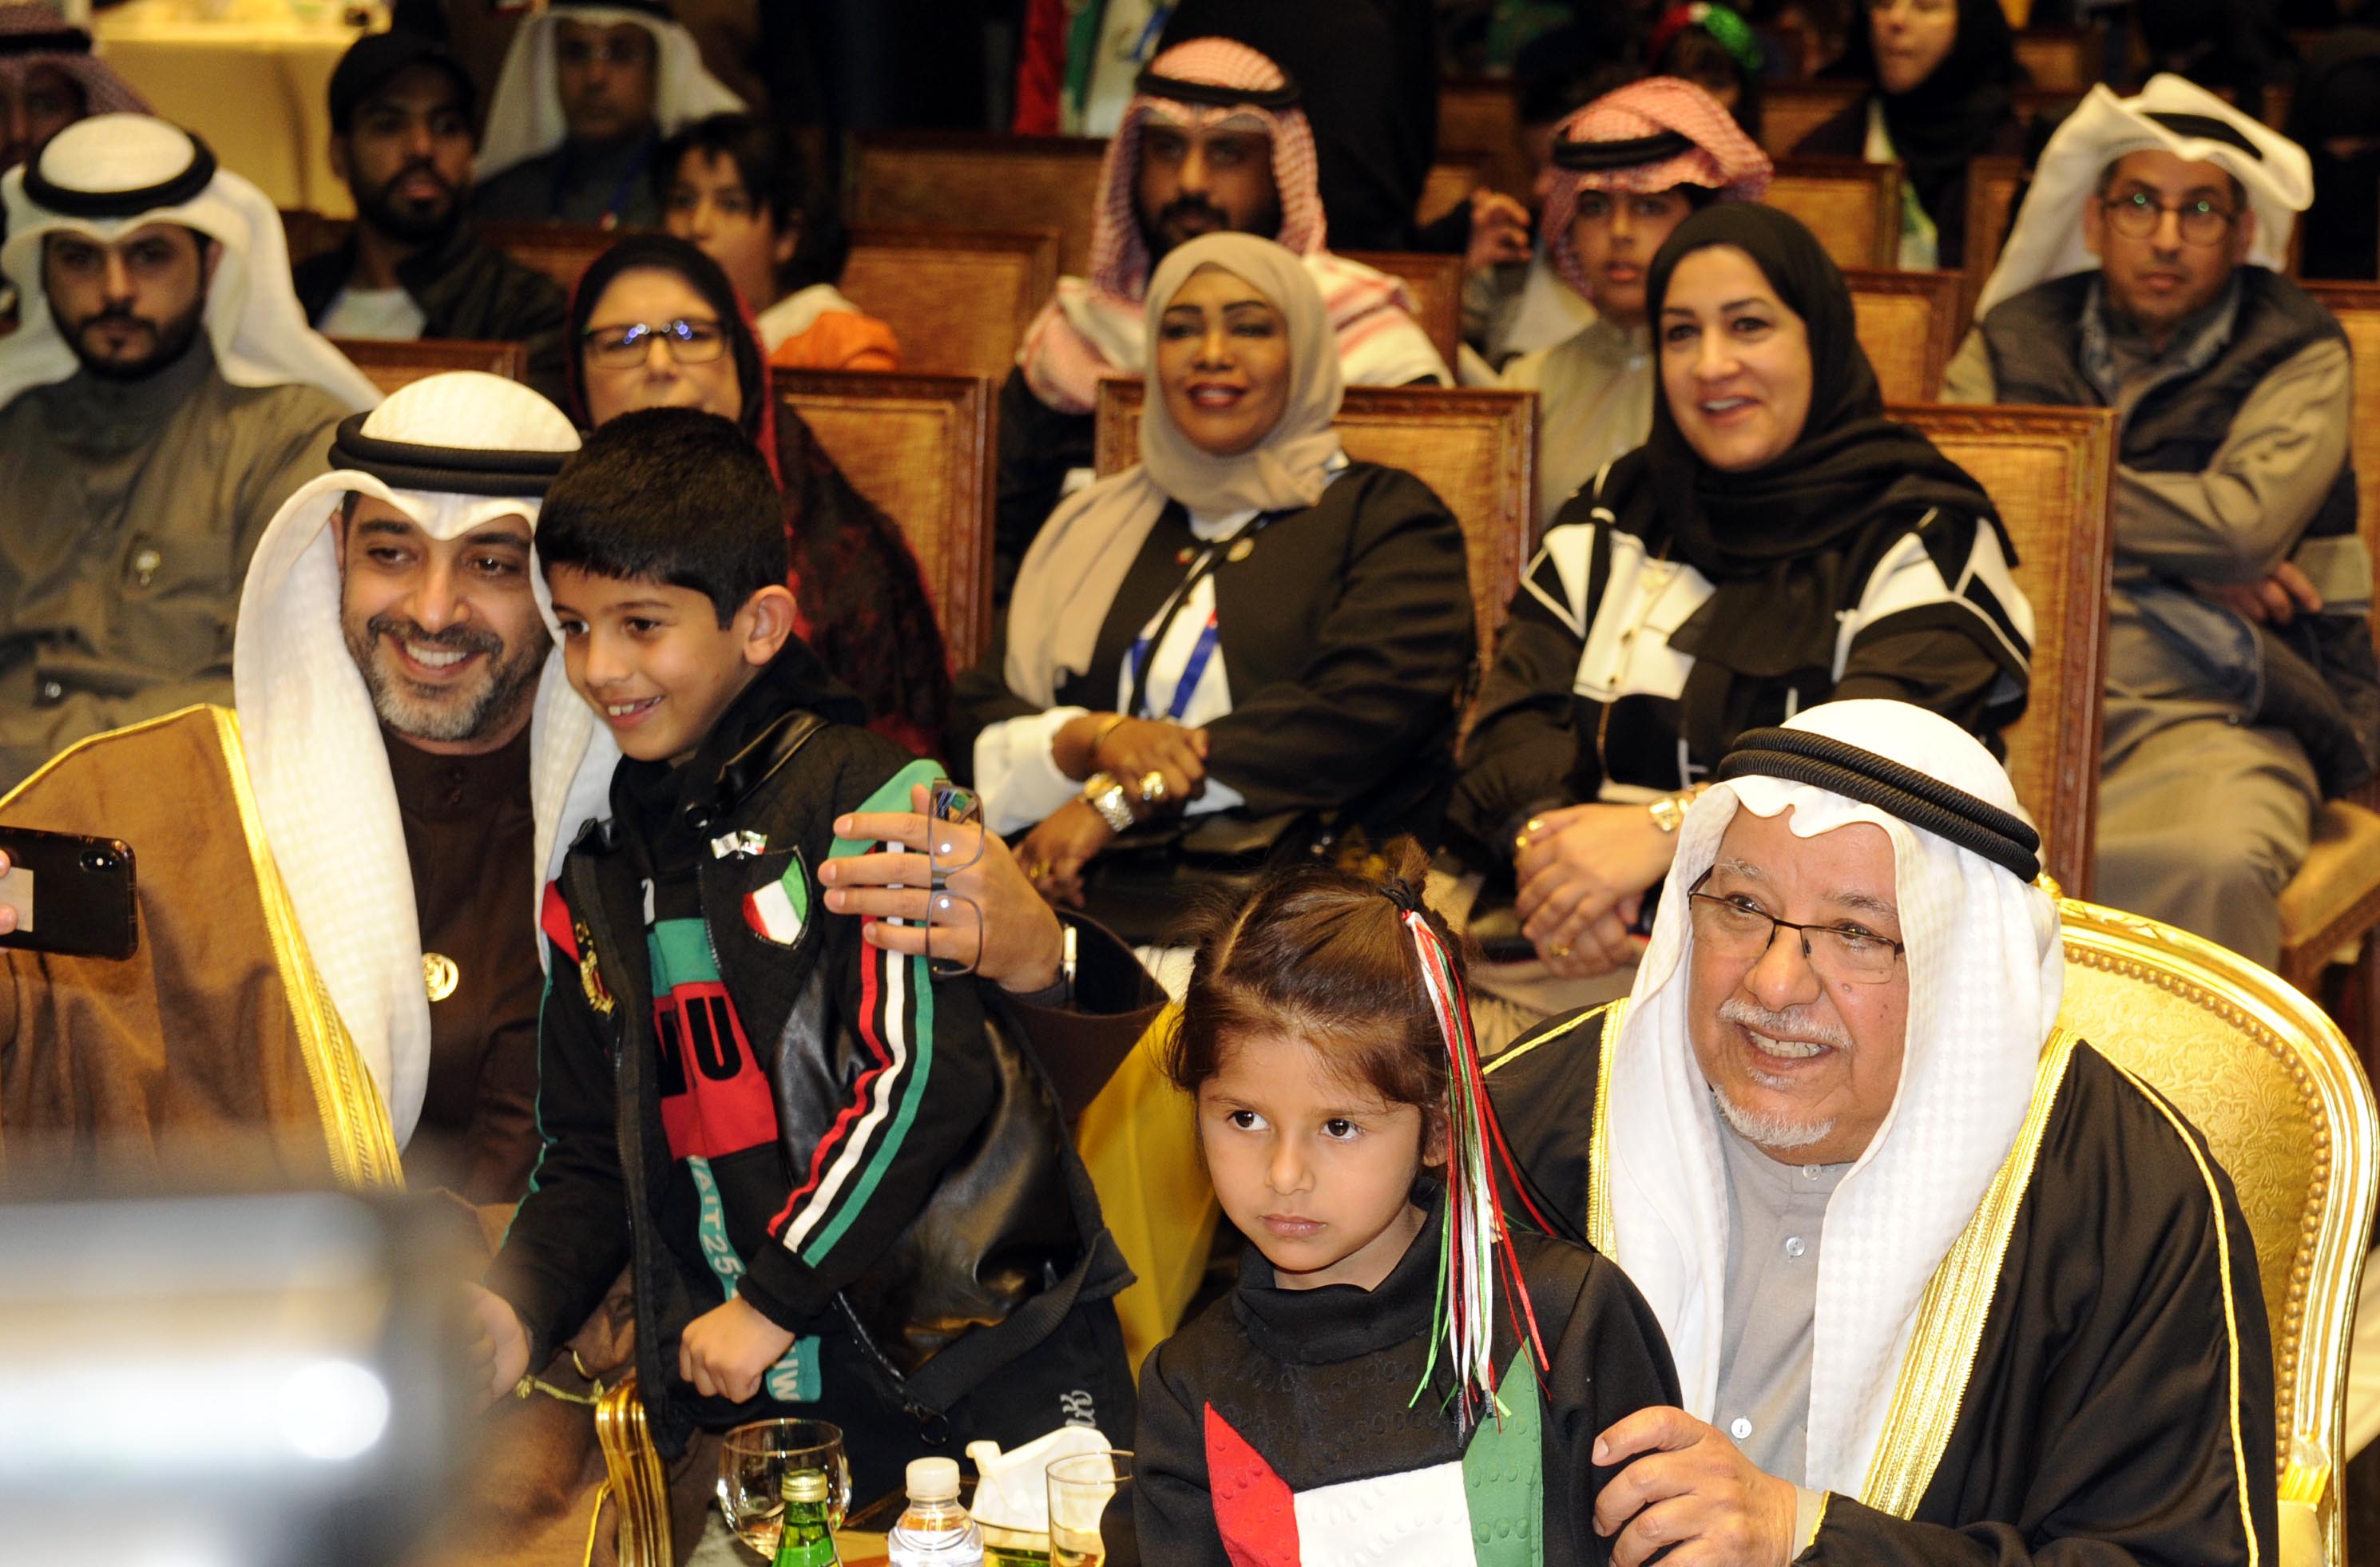 الشيخ علي الجراح والشيخ محمد العبد الله مع طفلين أثناء الحفل